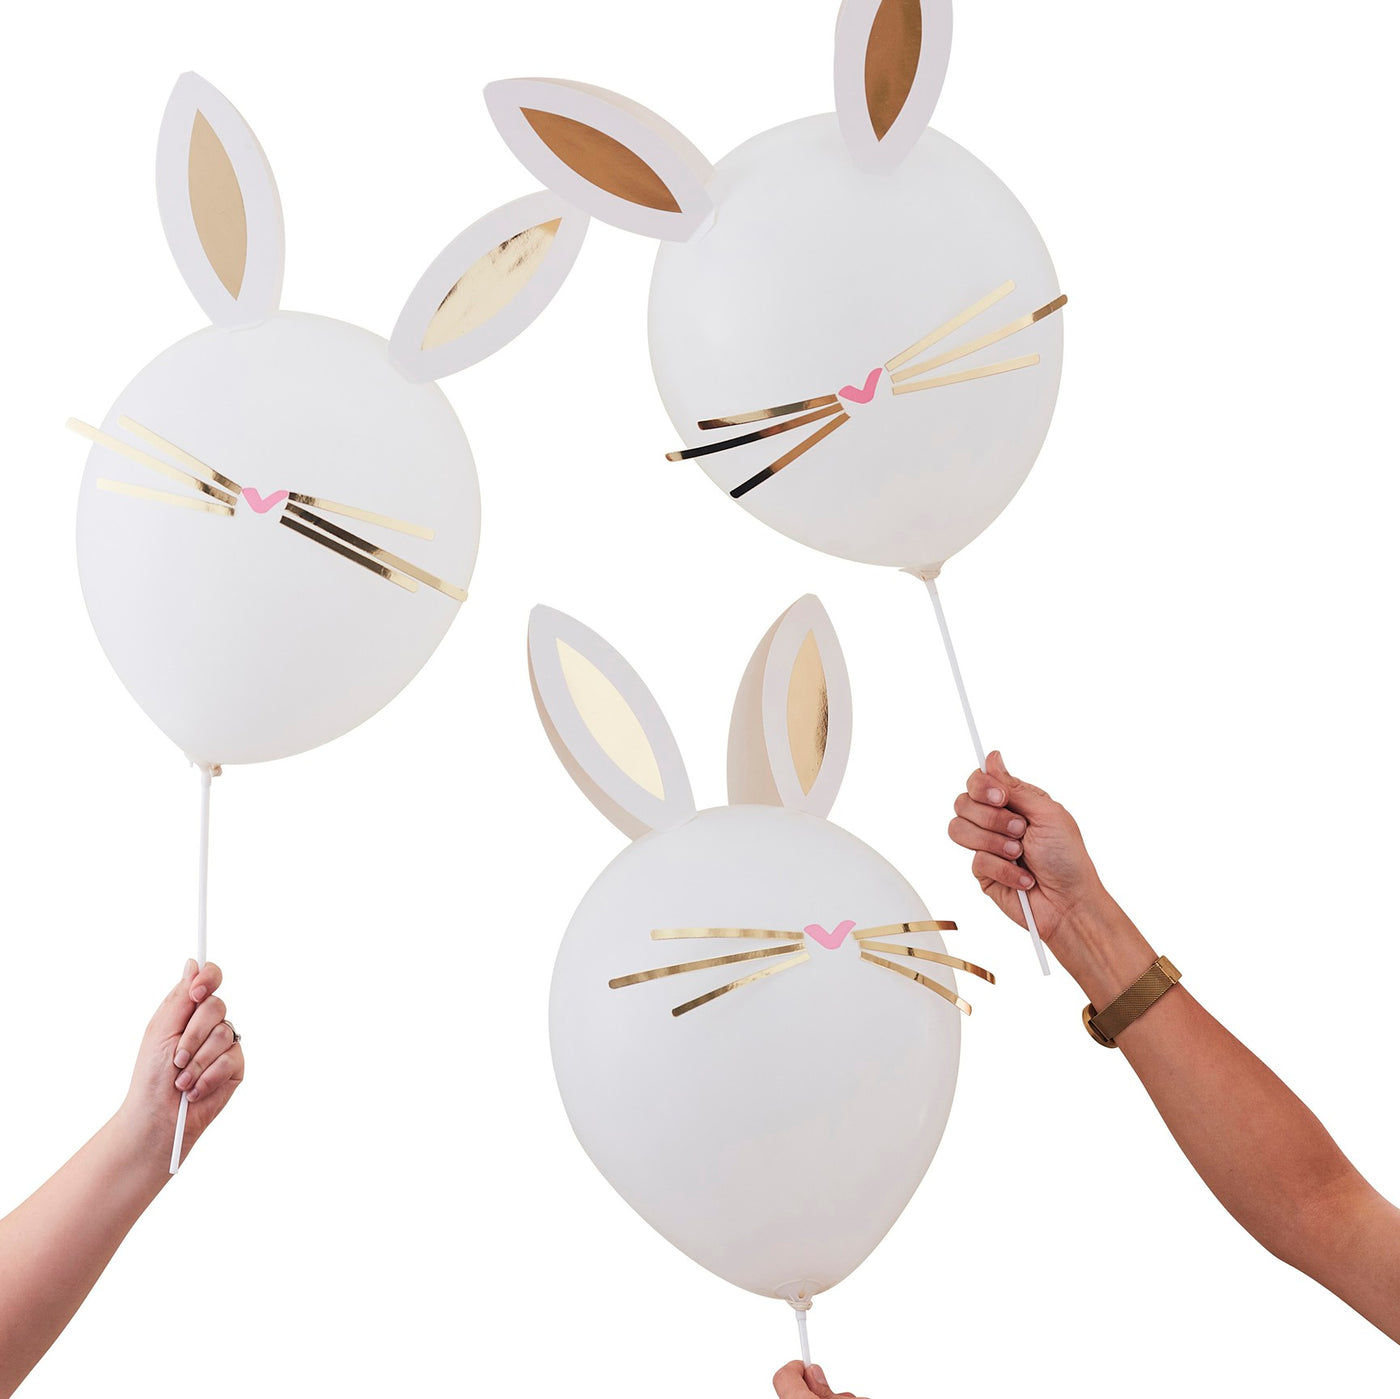 DIY Easter Bunny Balloons